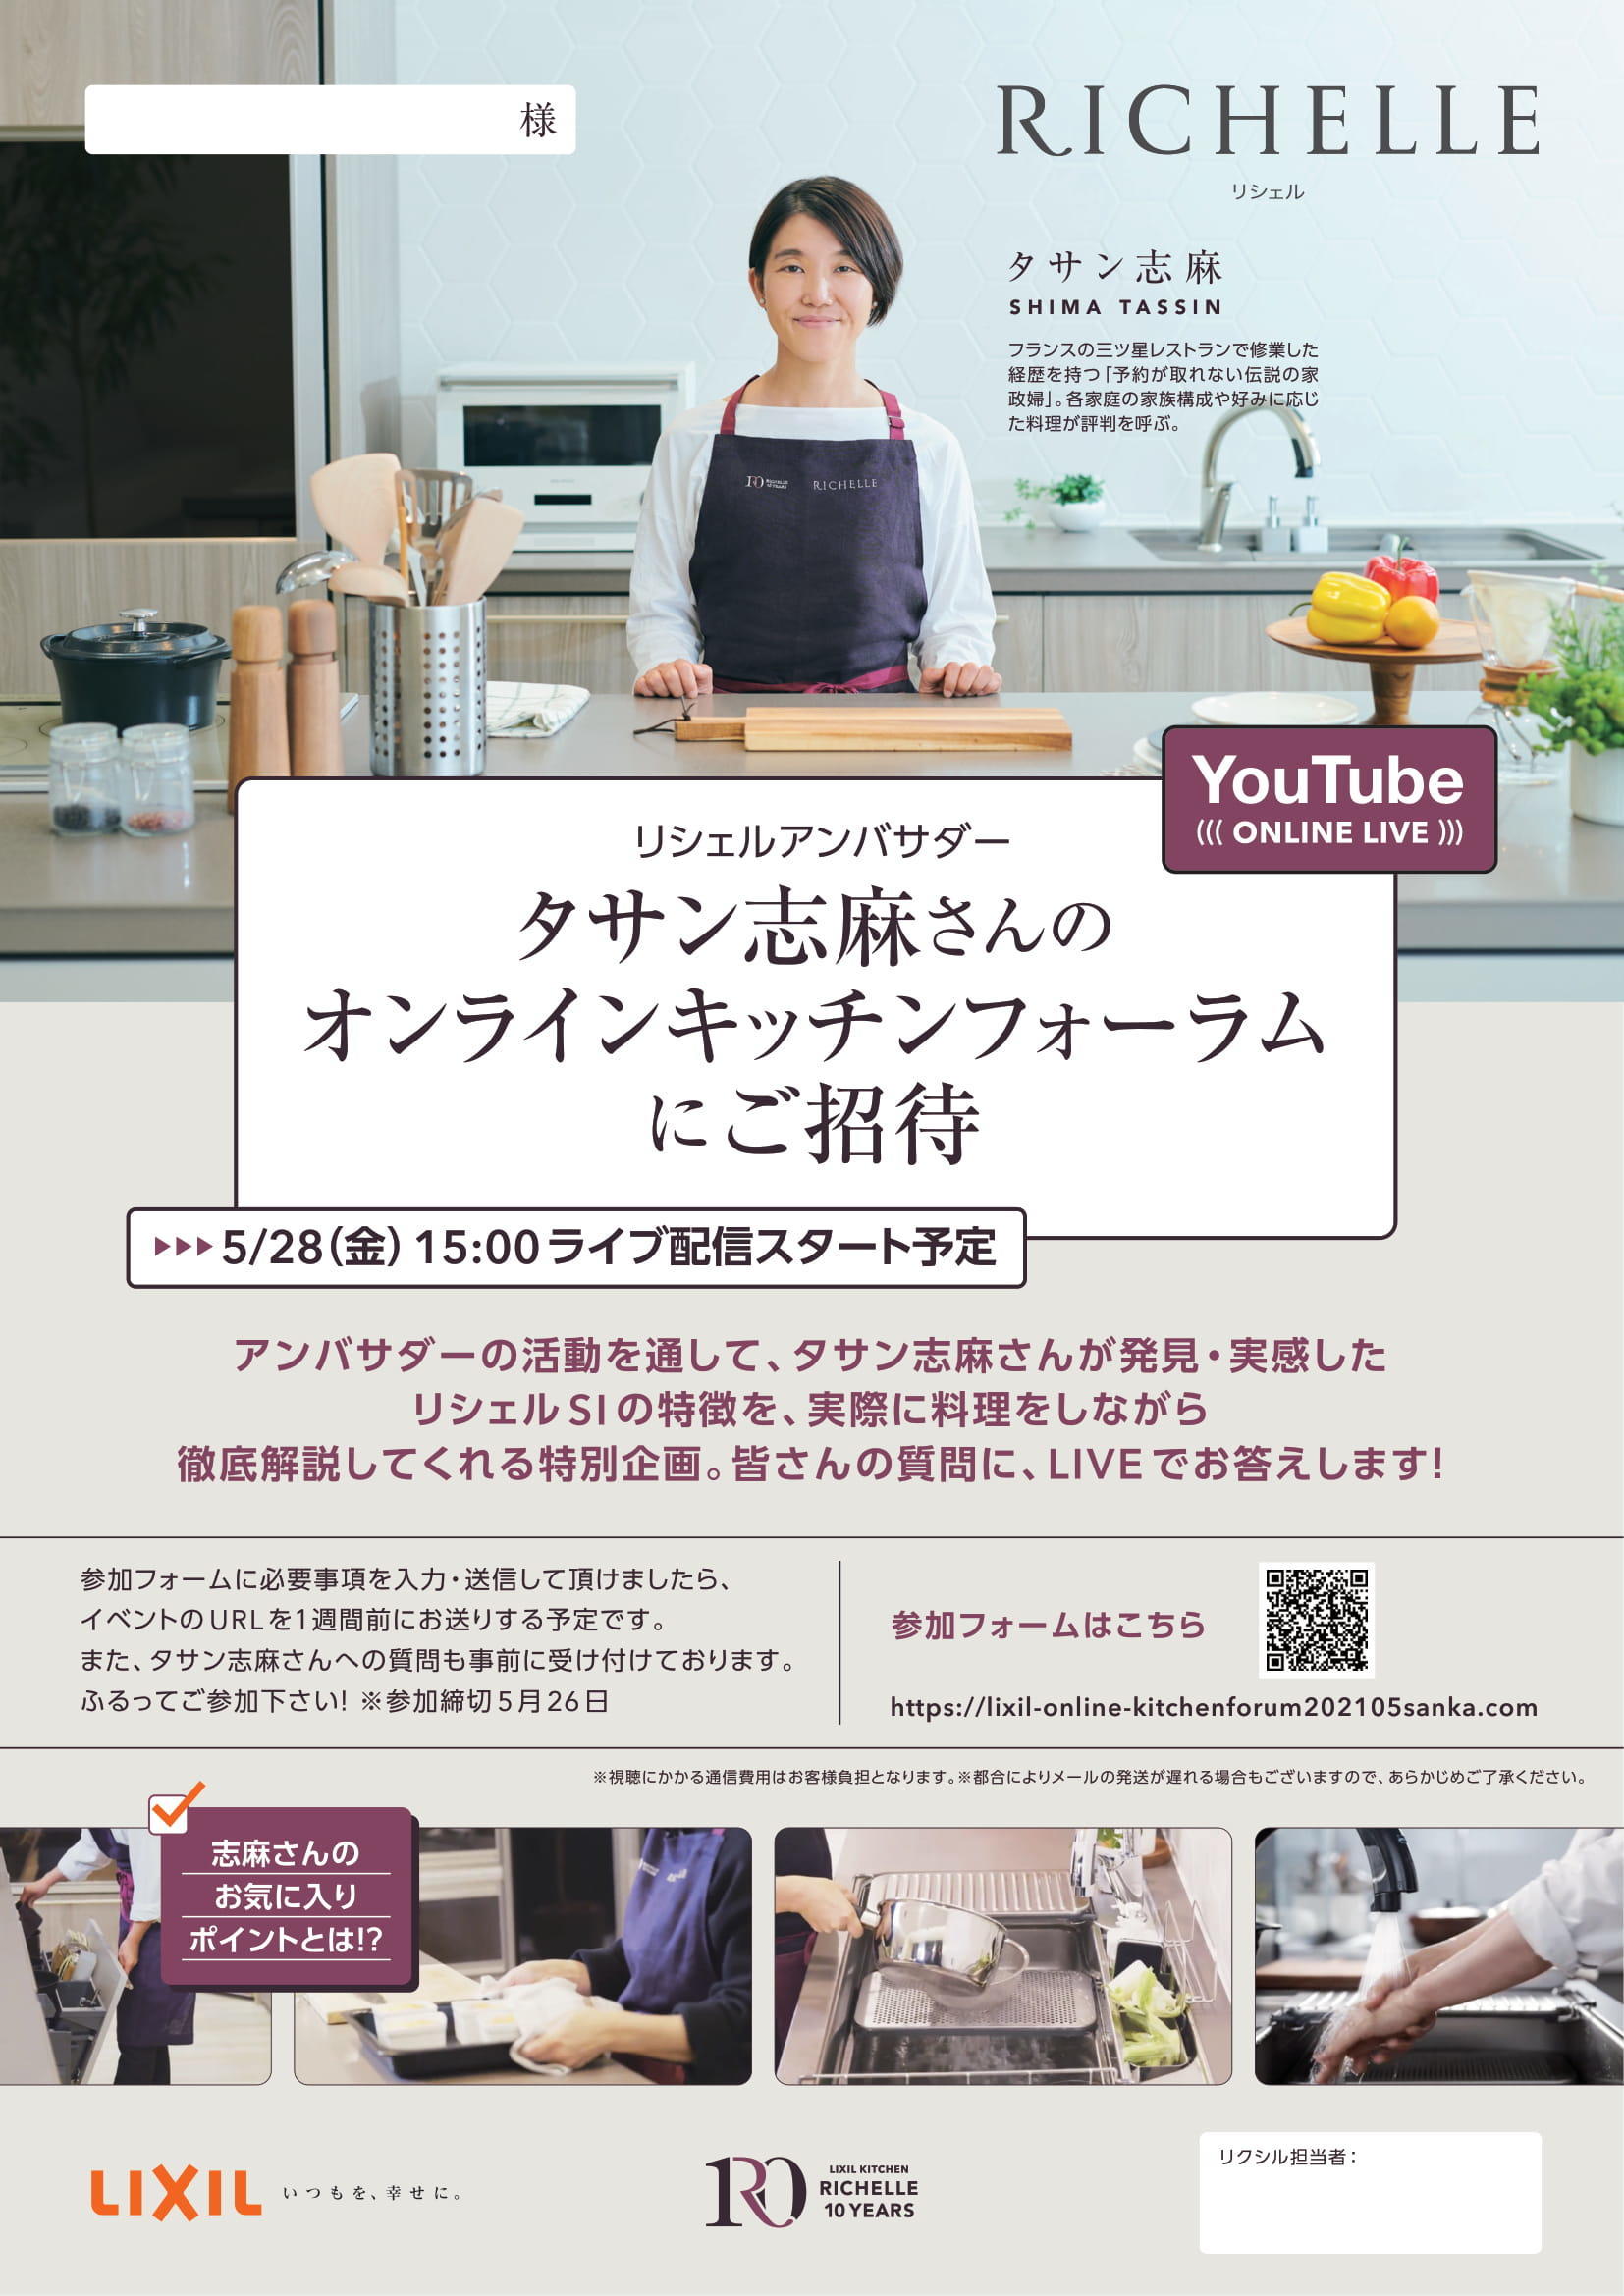 タサン志麻さんのオンラインキッチンフォーラム-1.jpg